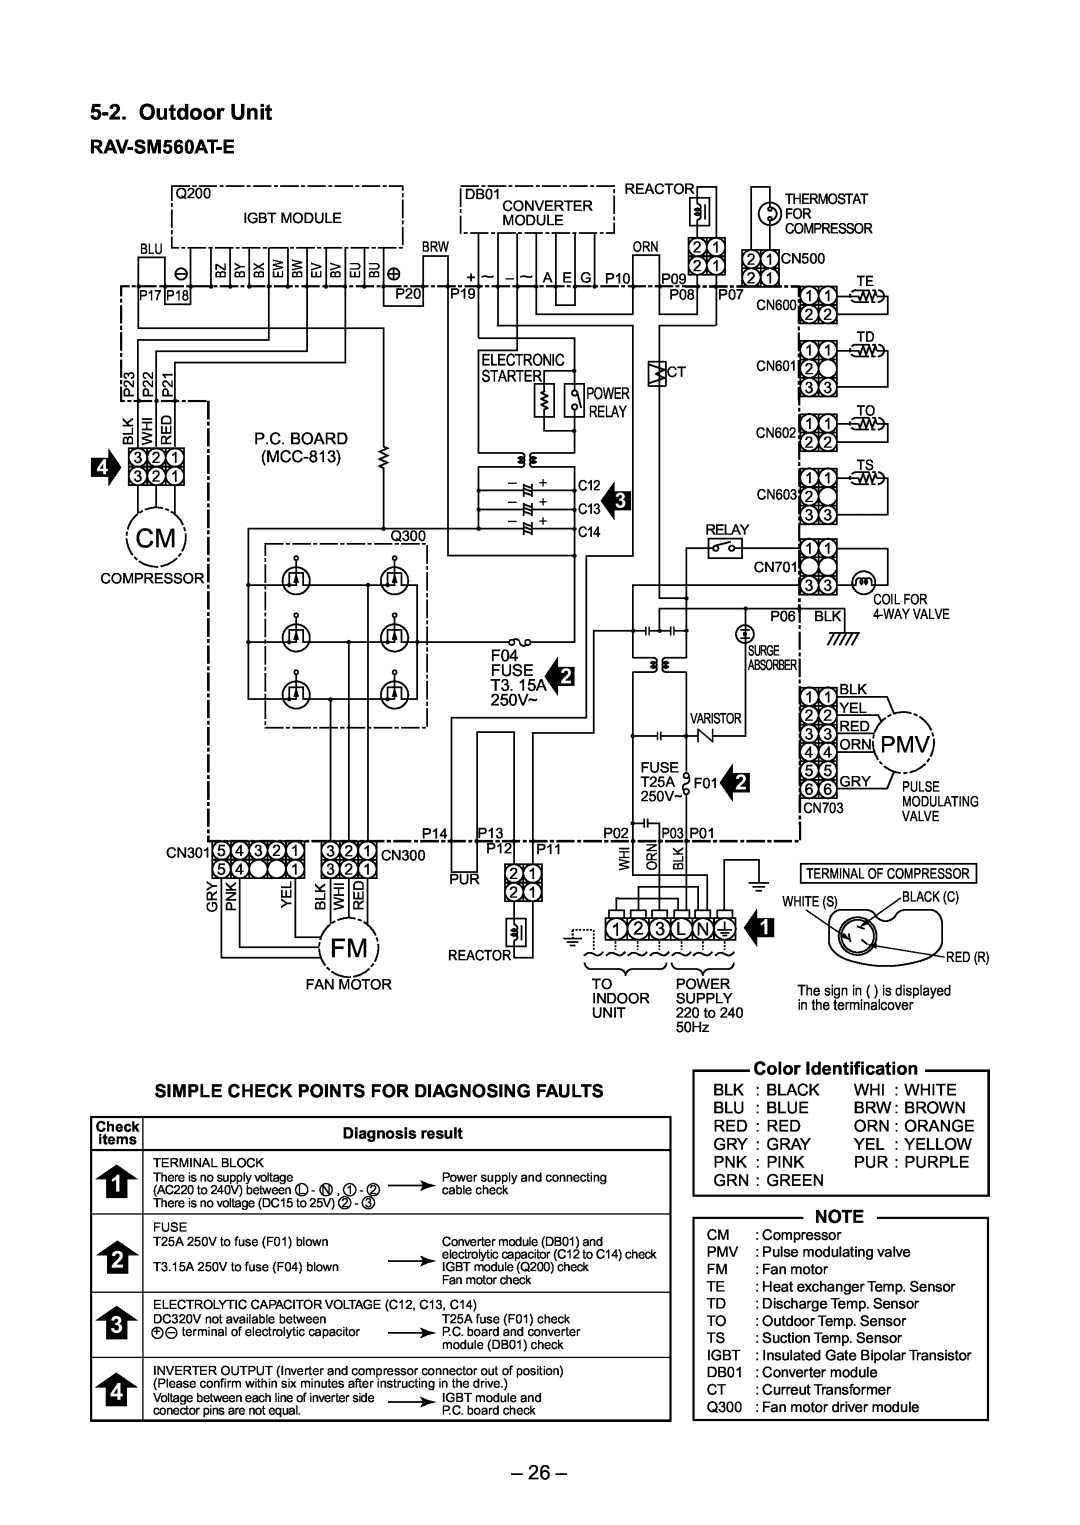 Toshiba RAV-SM560UT-E, RAV-SM800AT-E, RAV-SM800UT-E, RAV-SM560AT-E, RAV-SM560BT-E, RAV-SM800BT-E service manual Outdoor Unit, 26 